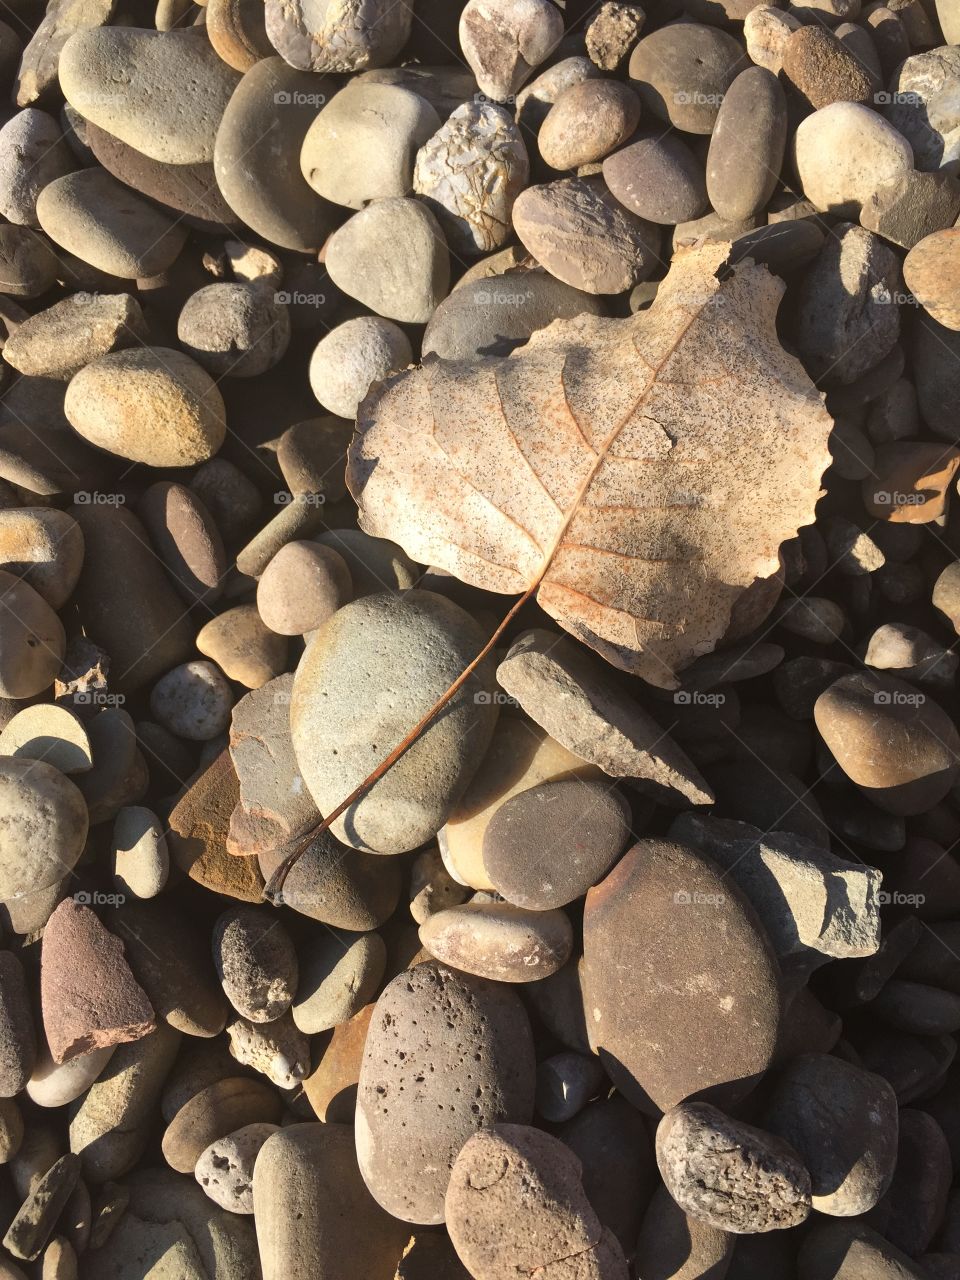 Dry leaf on pebbles